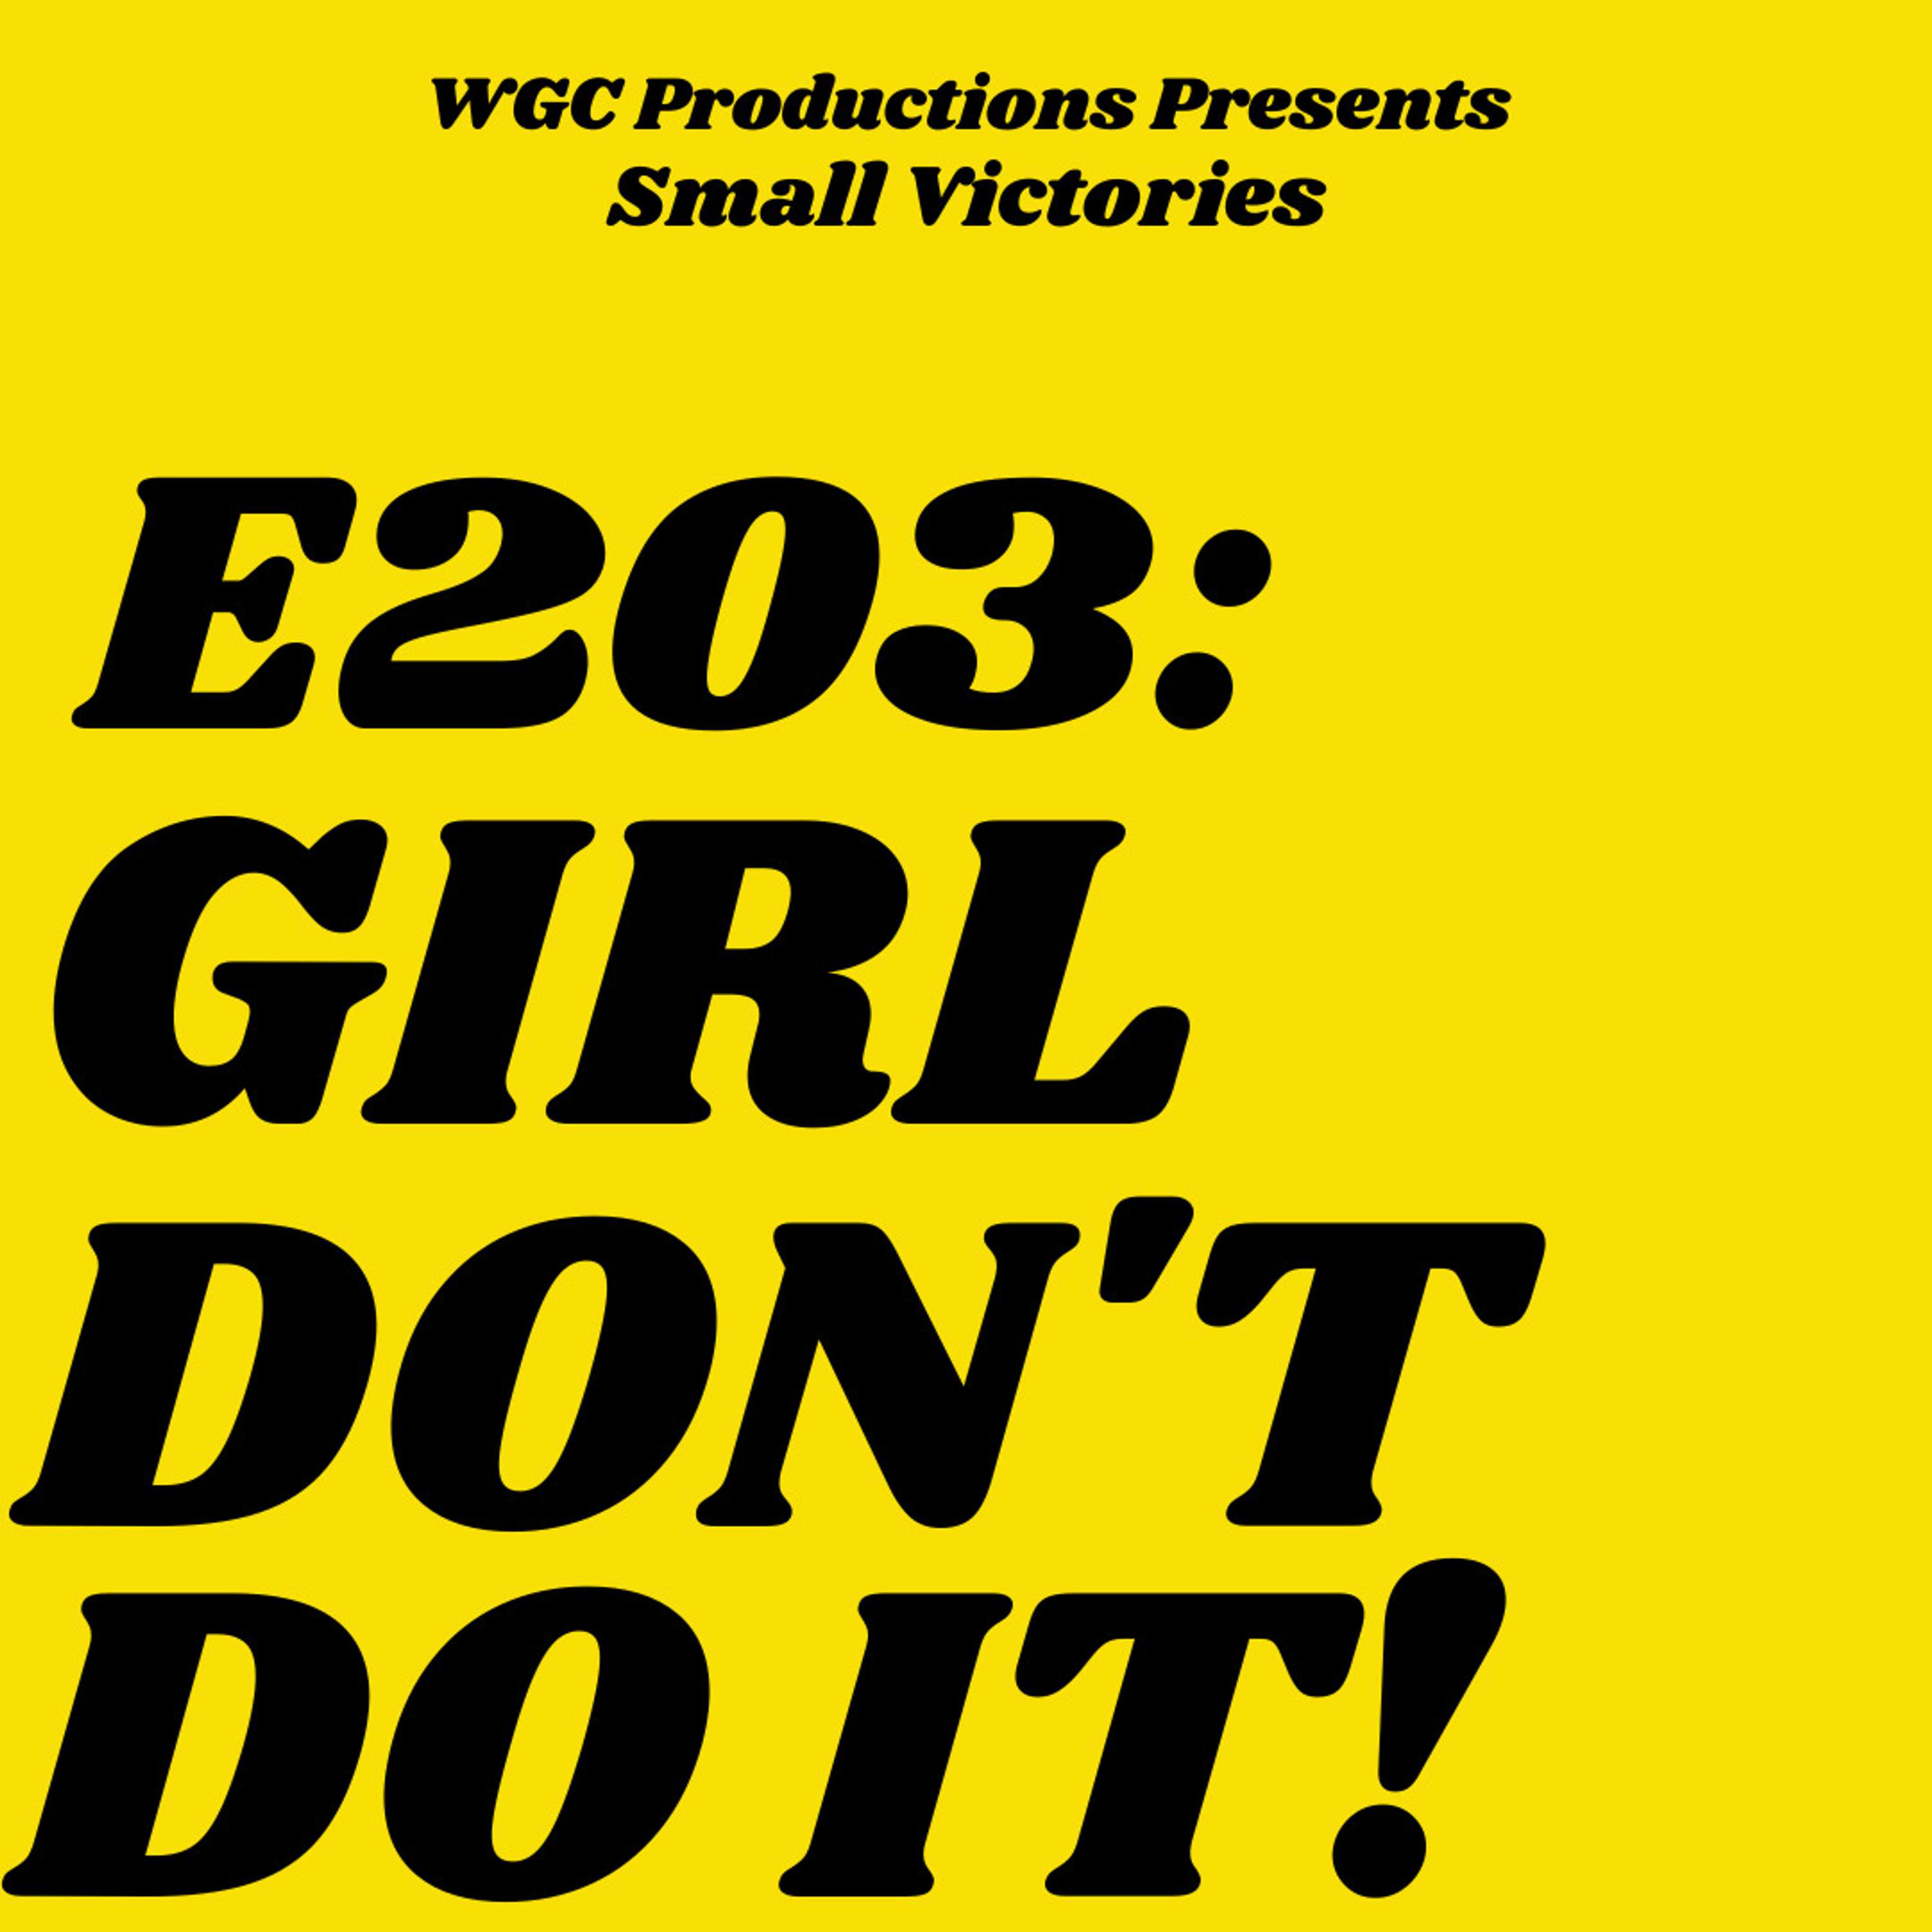 203: Girl, Don't do it!